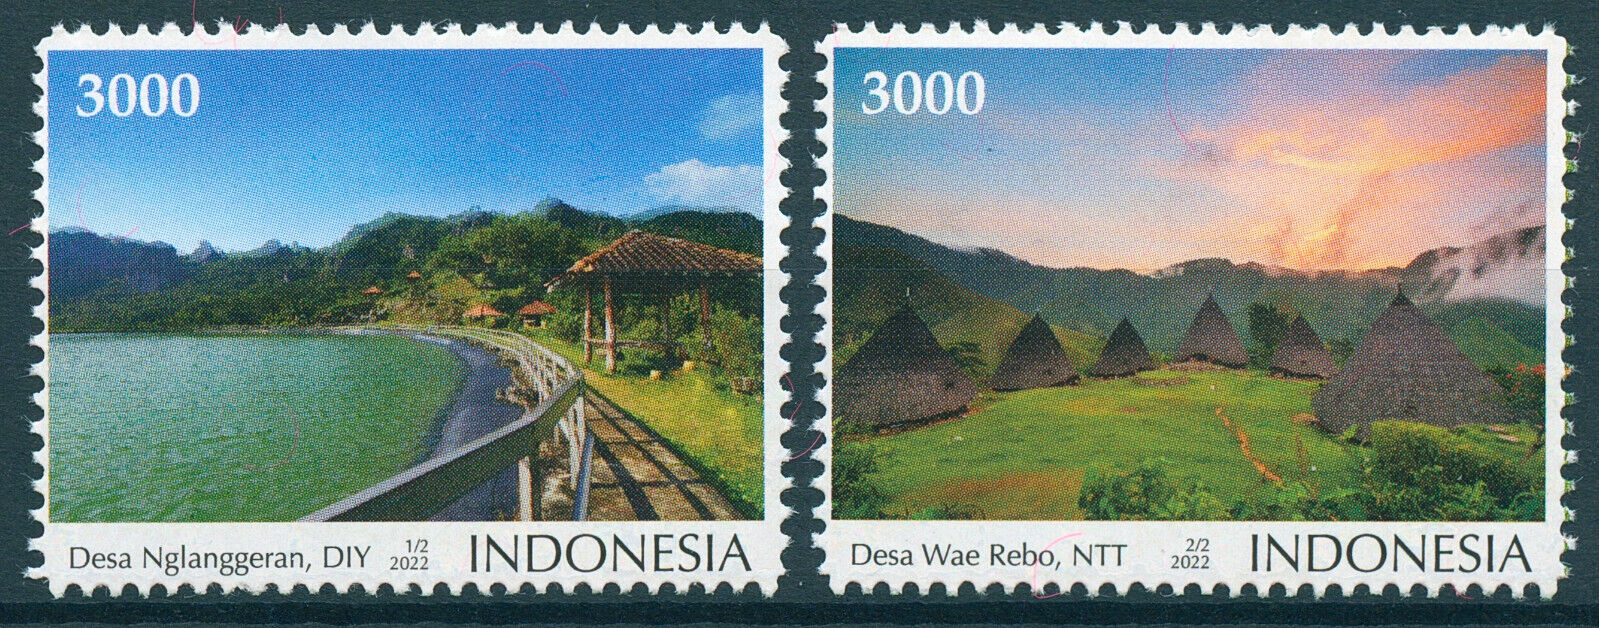 Indonesia 2022 MNH Landscapes Stamps Desa Wisata Tourism Mountains 2v Set